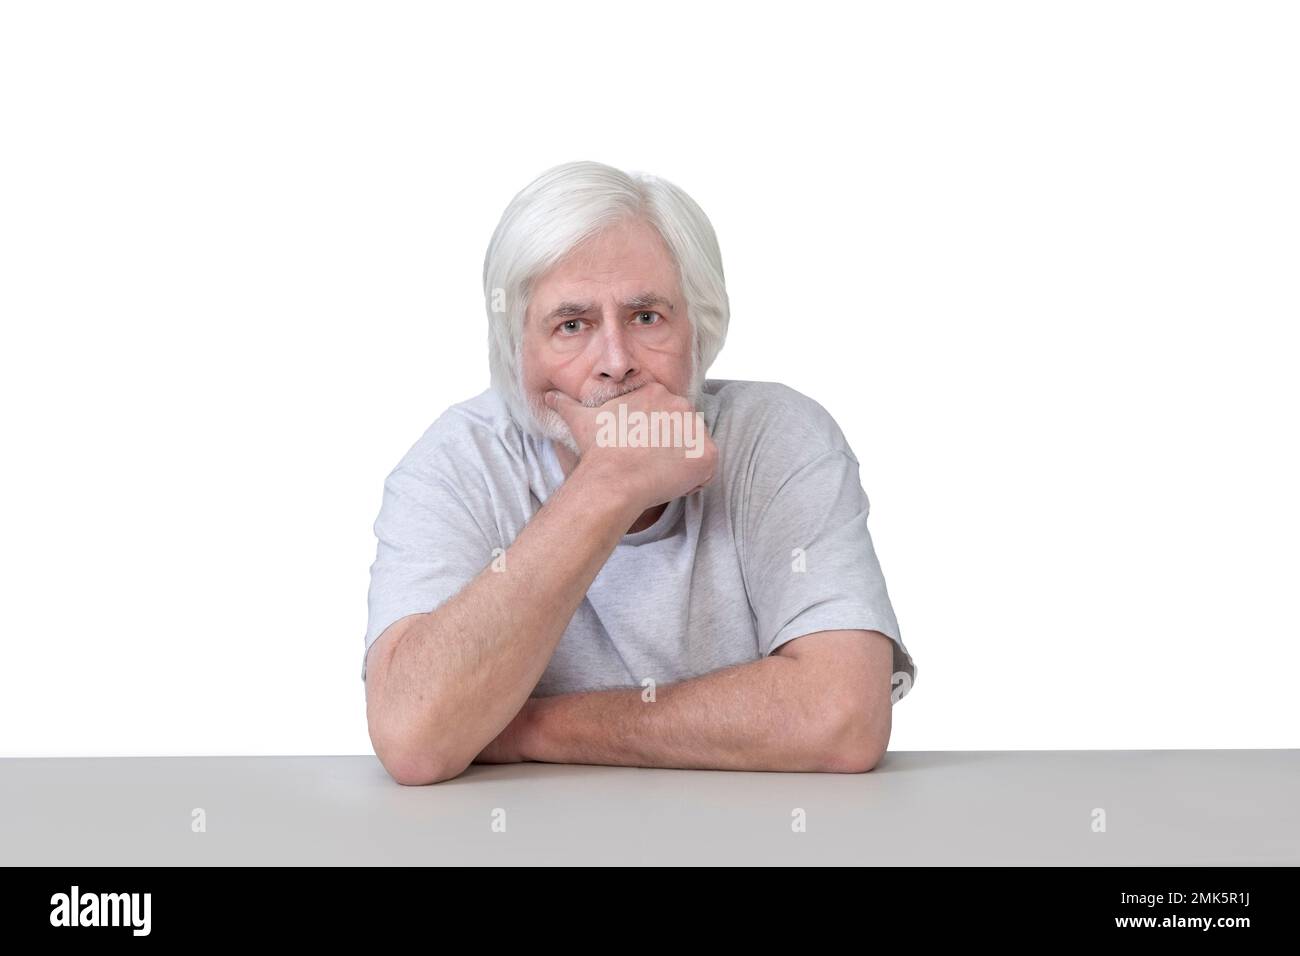 Horizontale Aufnahme eines alten Mannes, der an einem Tisch sitzt, mit der Hand am Kinn tief in tiefem Denken. Isoliert auf weiß. Viel Platz zum Kopieren. Stockfoto